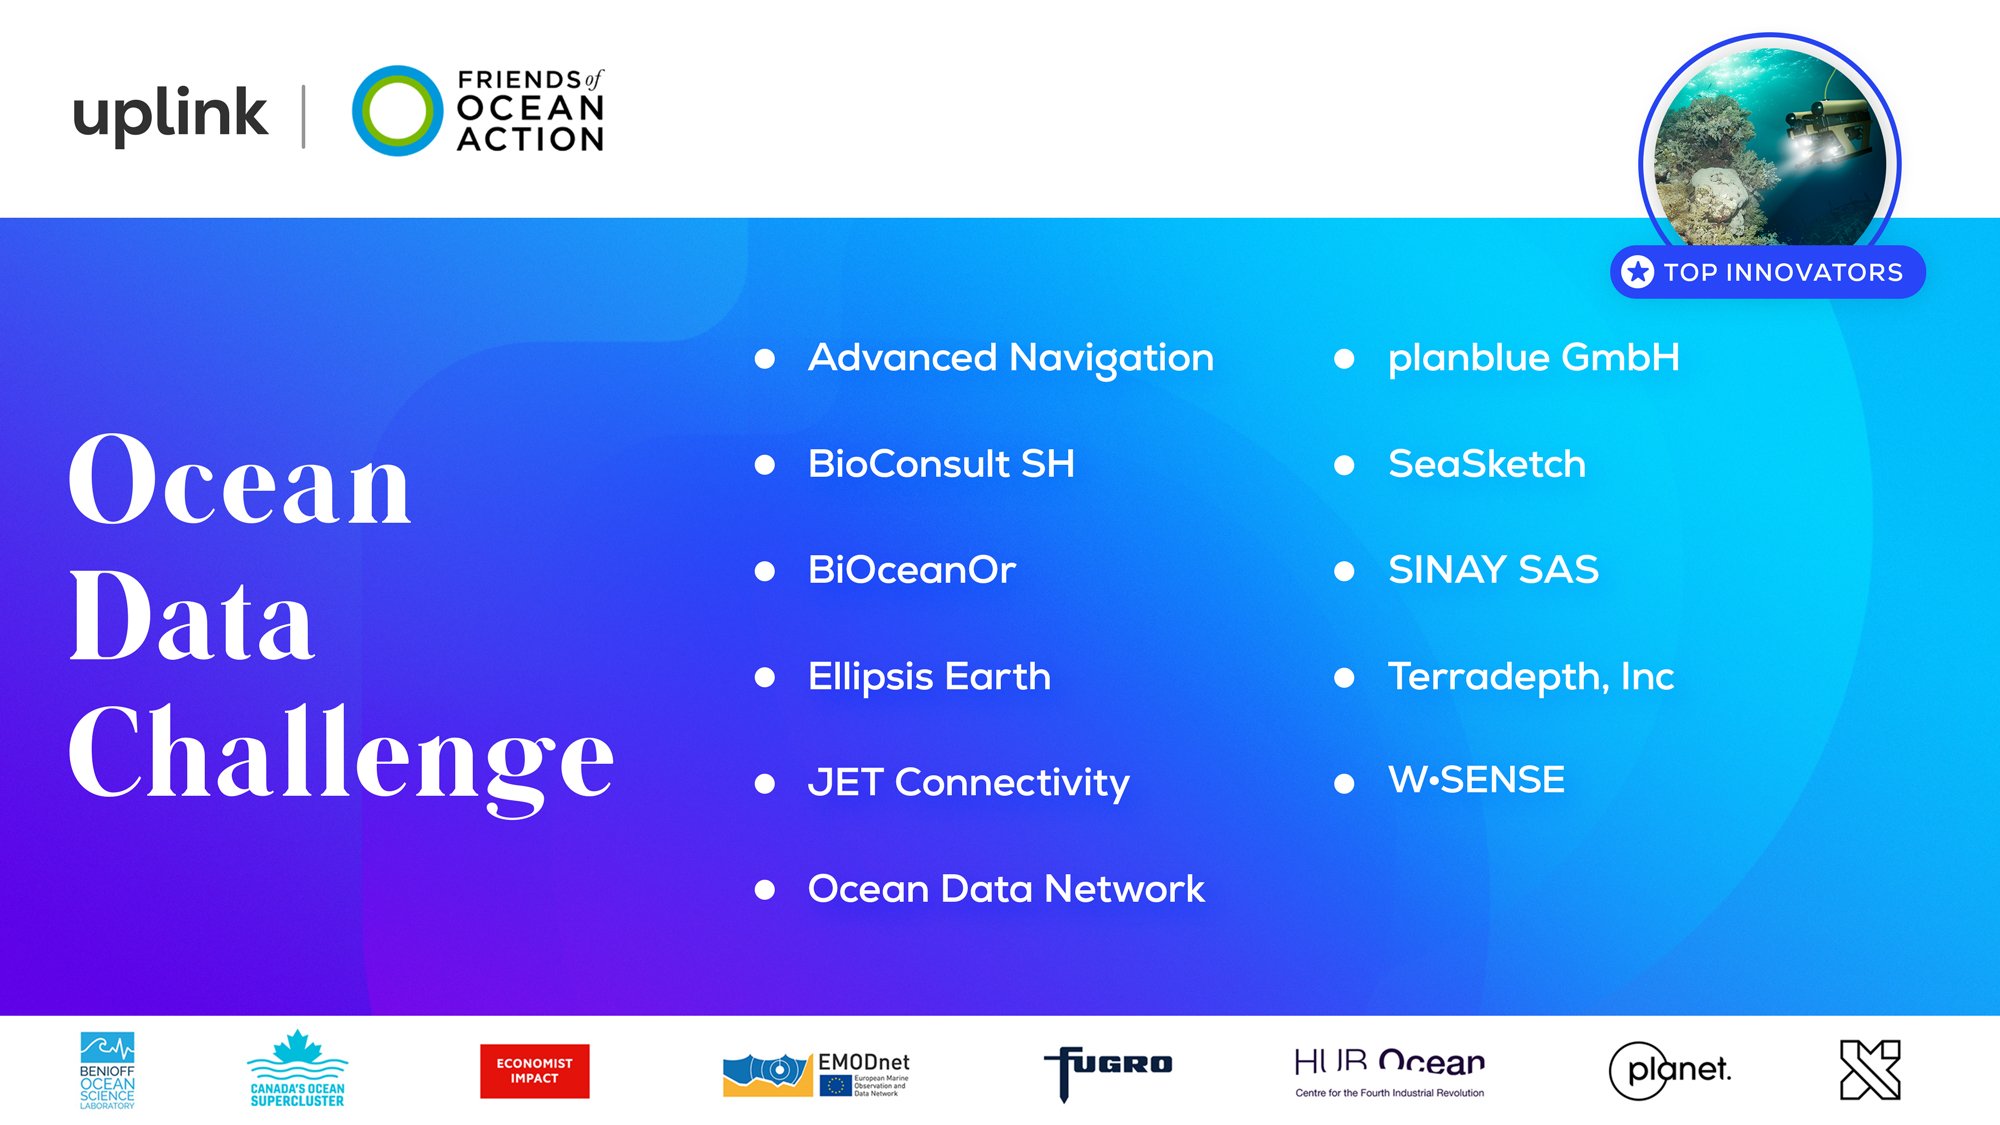 Liste der "Top innovators" der Ocean Data Challenge. Die Namen der 11 Gewinner werden auf blauem Hintergrund dargestellt. Darüber auf weißem Hintergrund die Logos von uplink und Friends of Ocean Action, darunter auf weißem Hintergrund die Logos der Sponsoren.